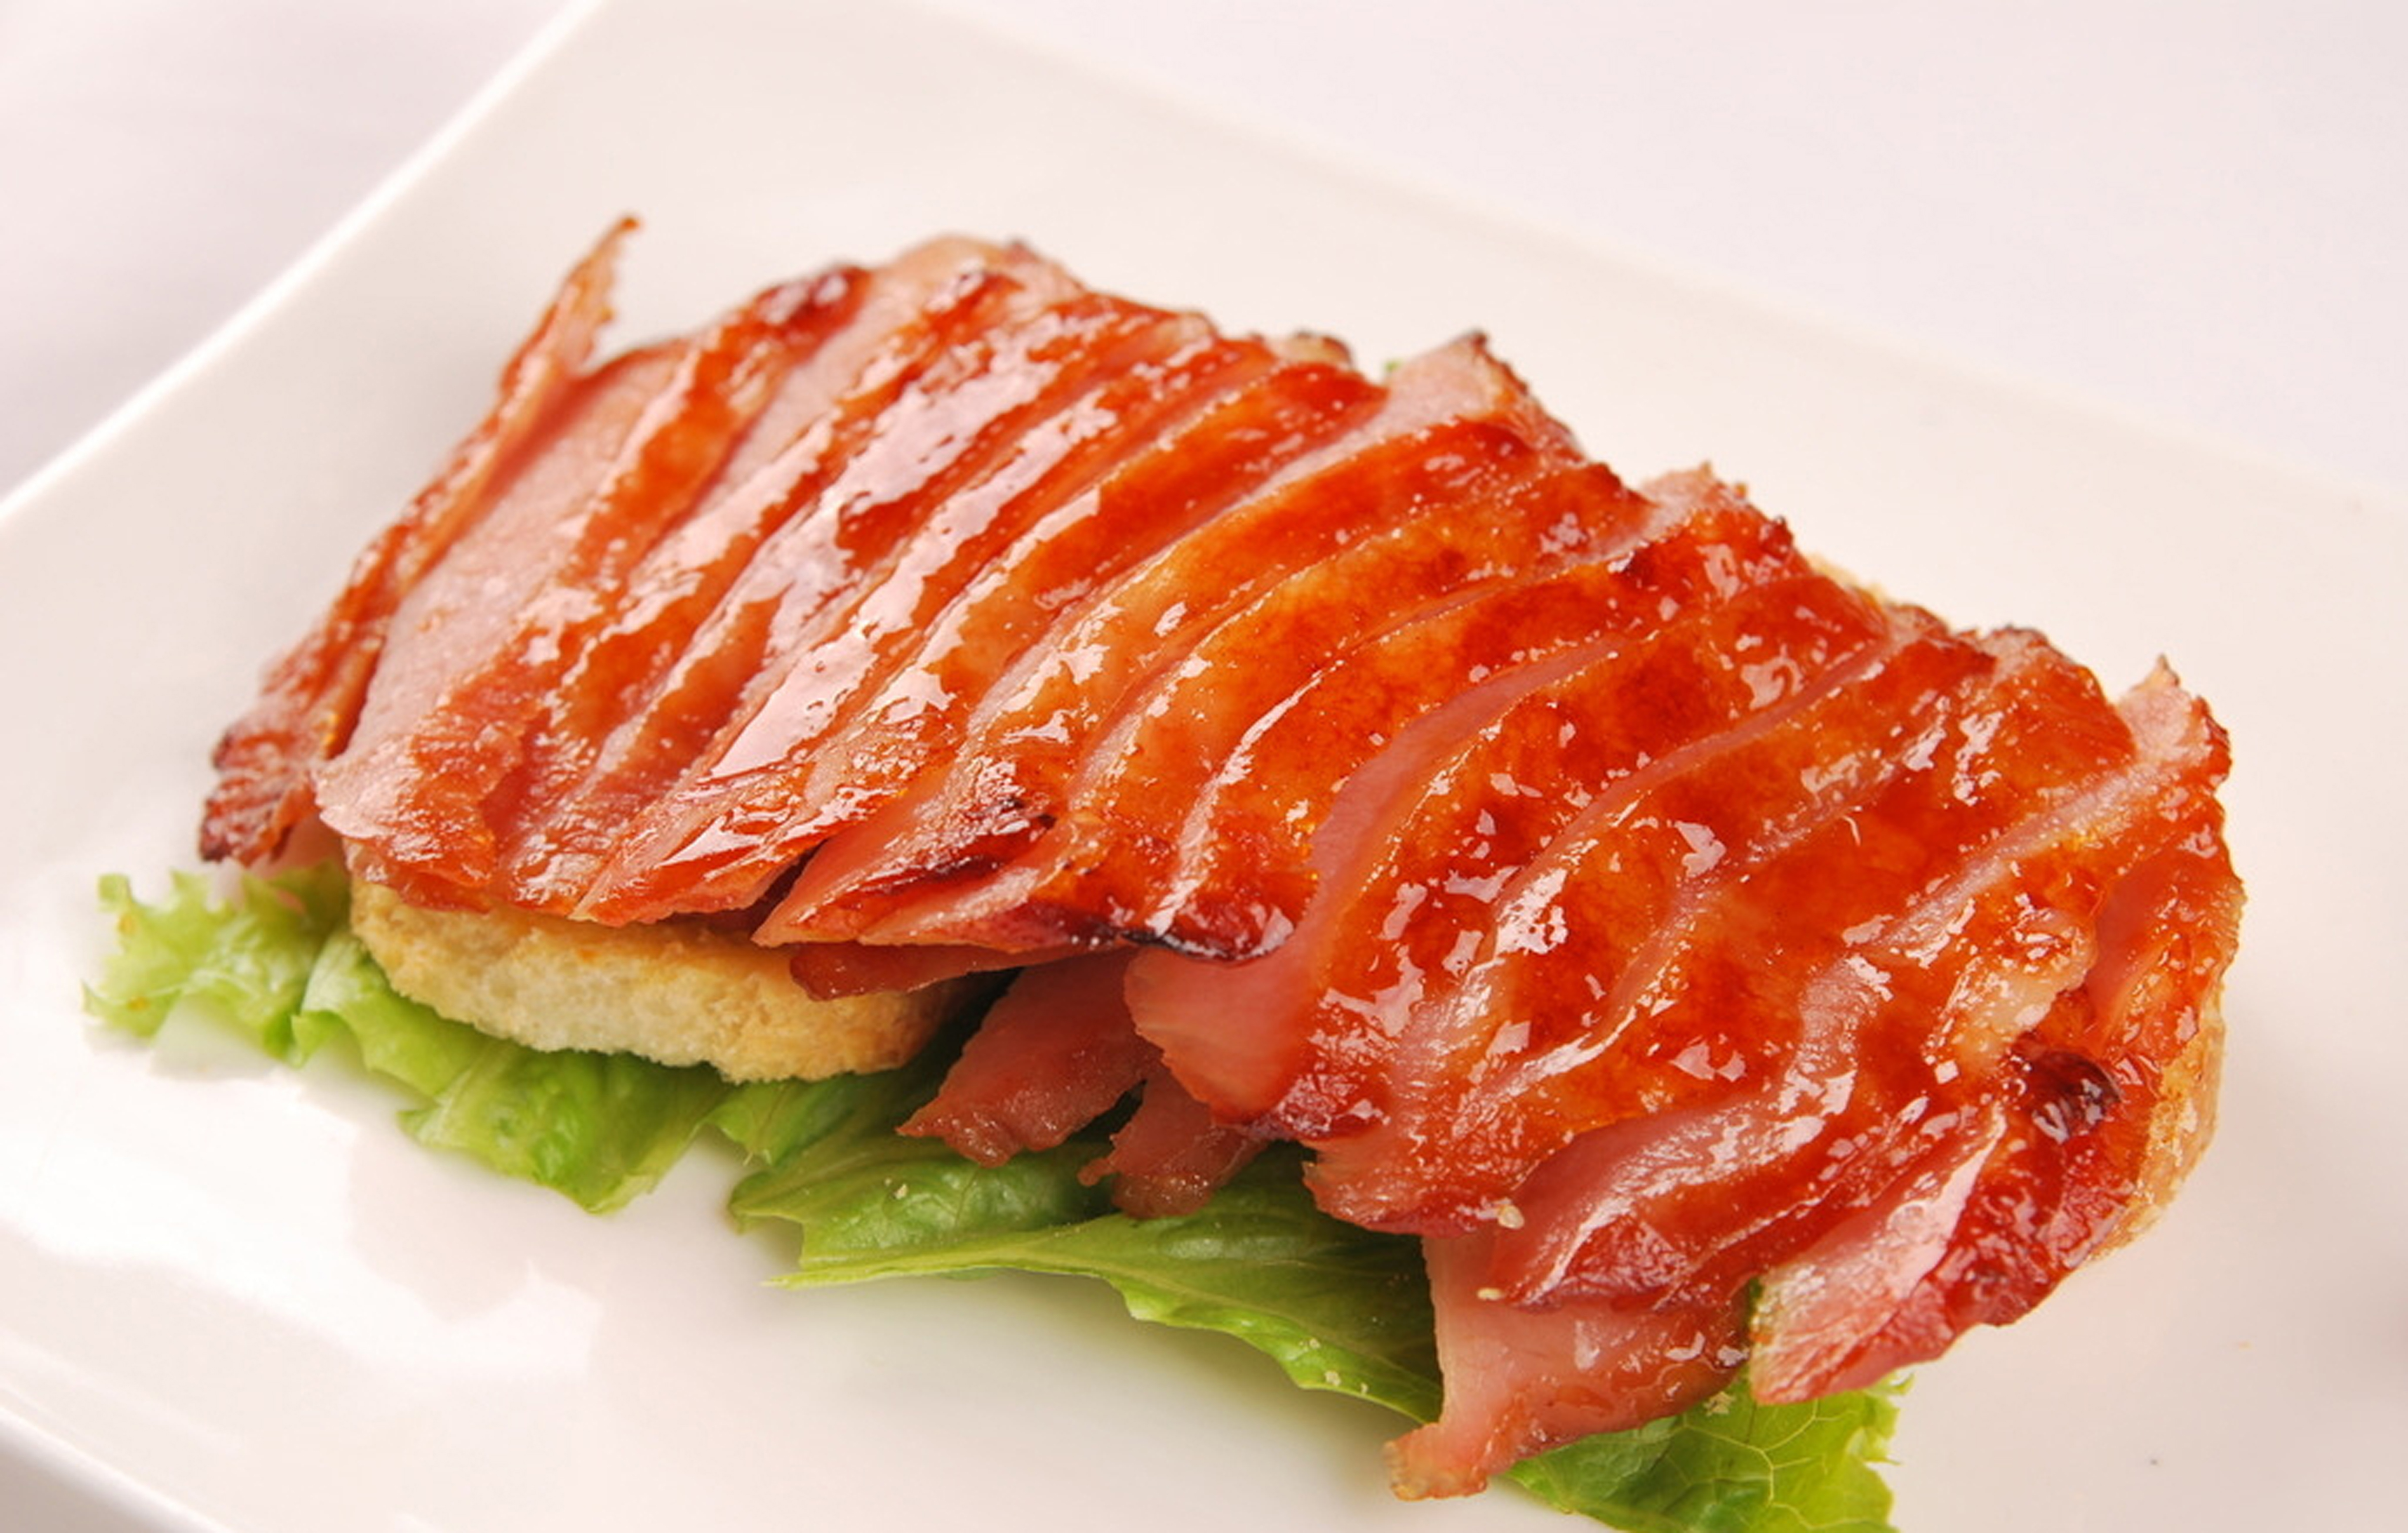 每日推荐六道沪菜:食客喜爱的味道,碳烤猪颈肉